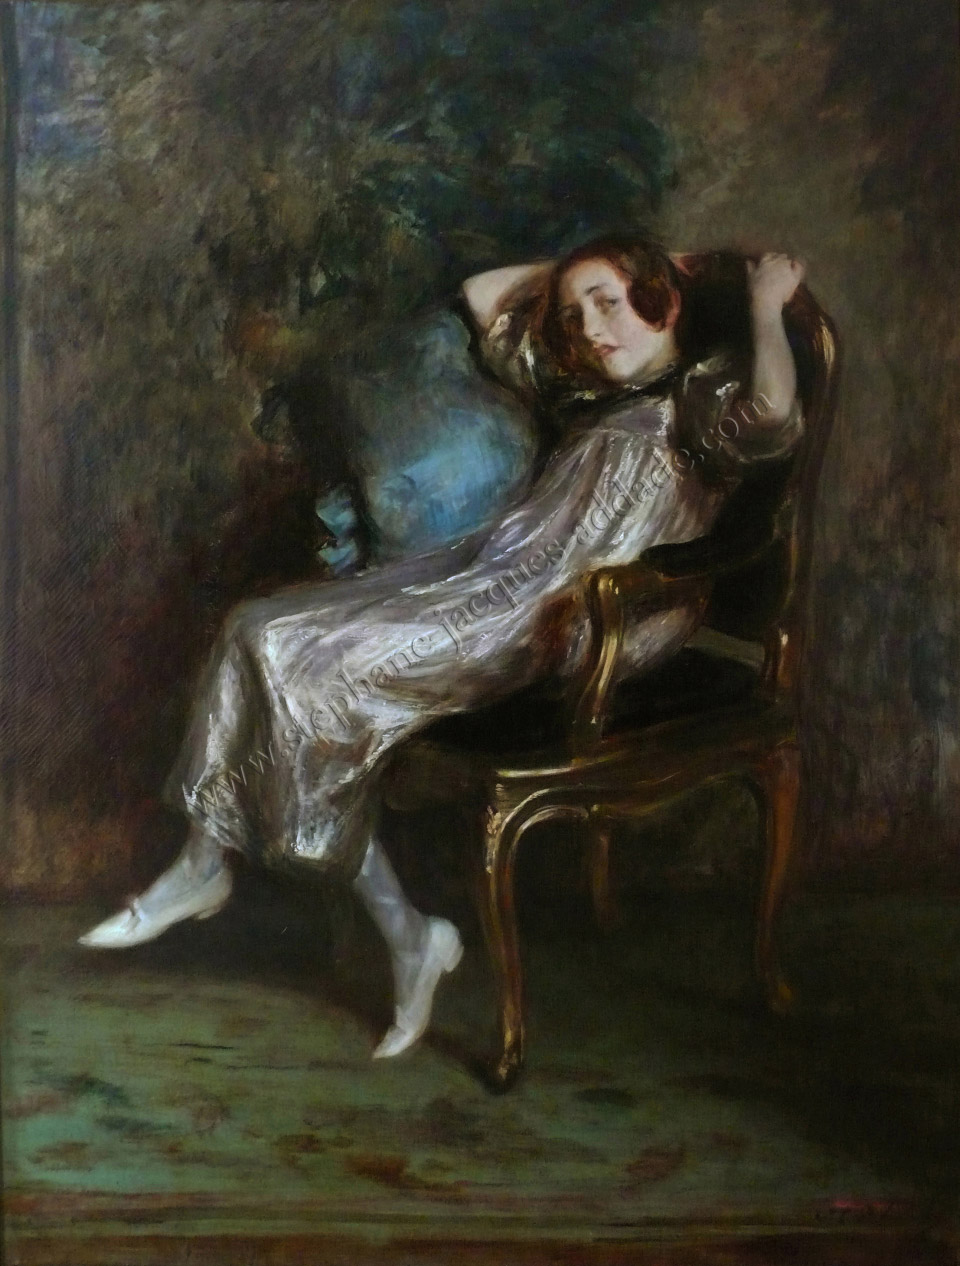  Jacques-Emile Blanche - Réveil (Just awake) 1900